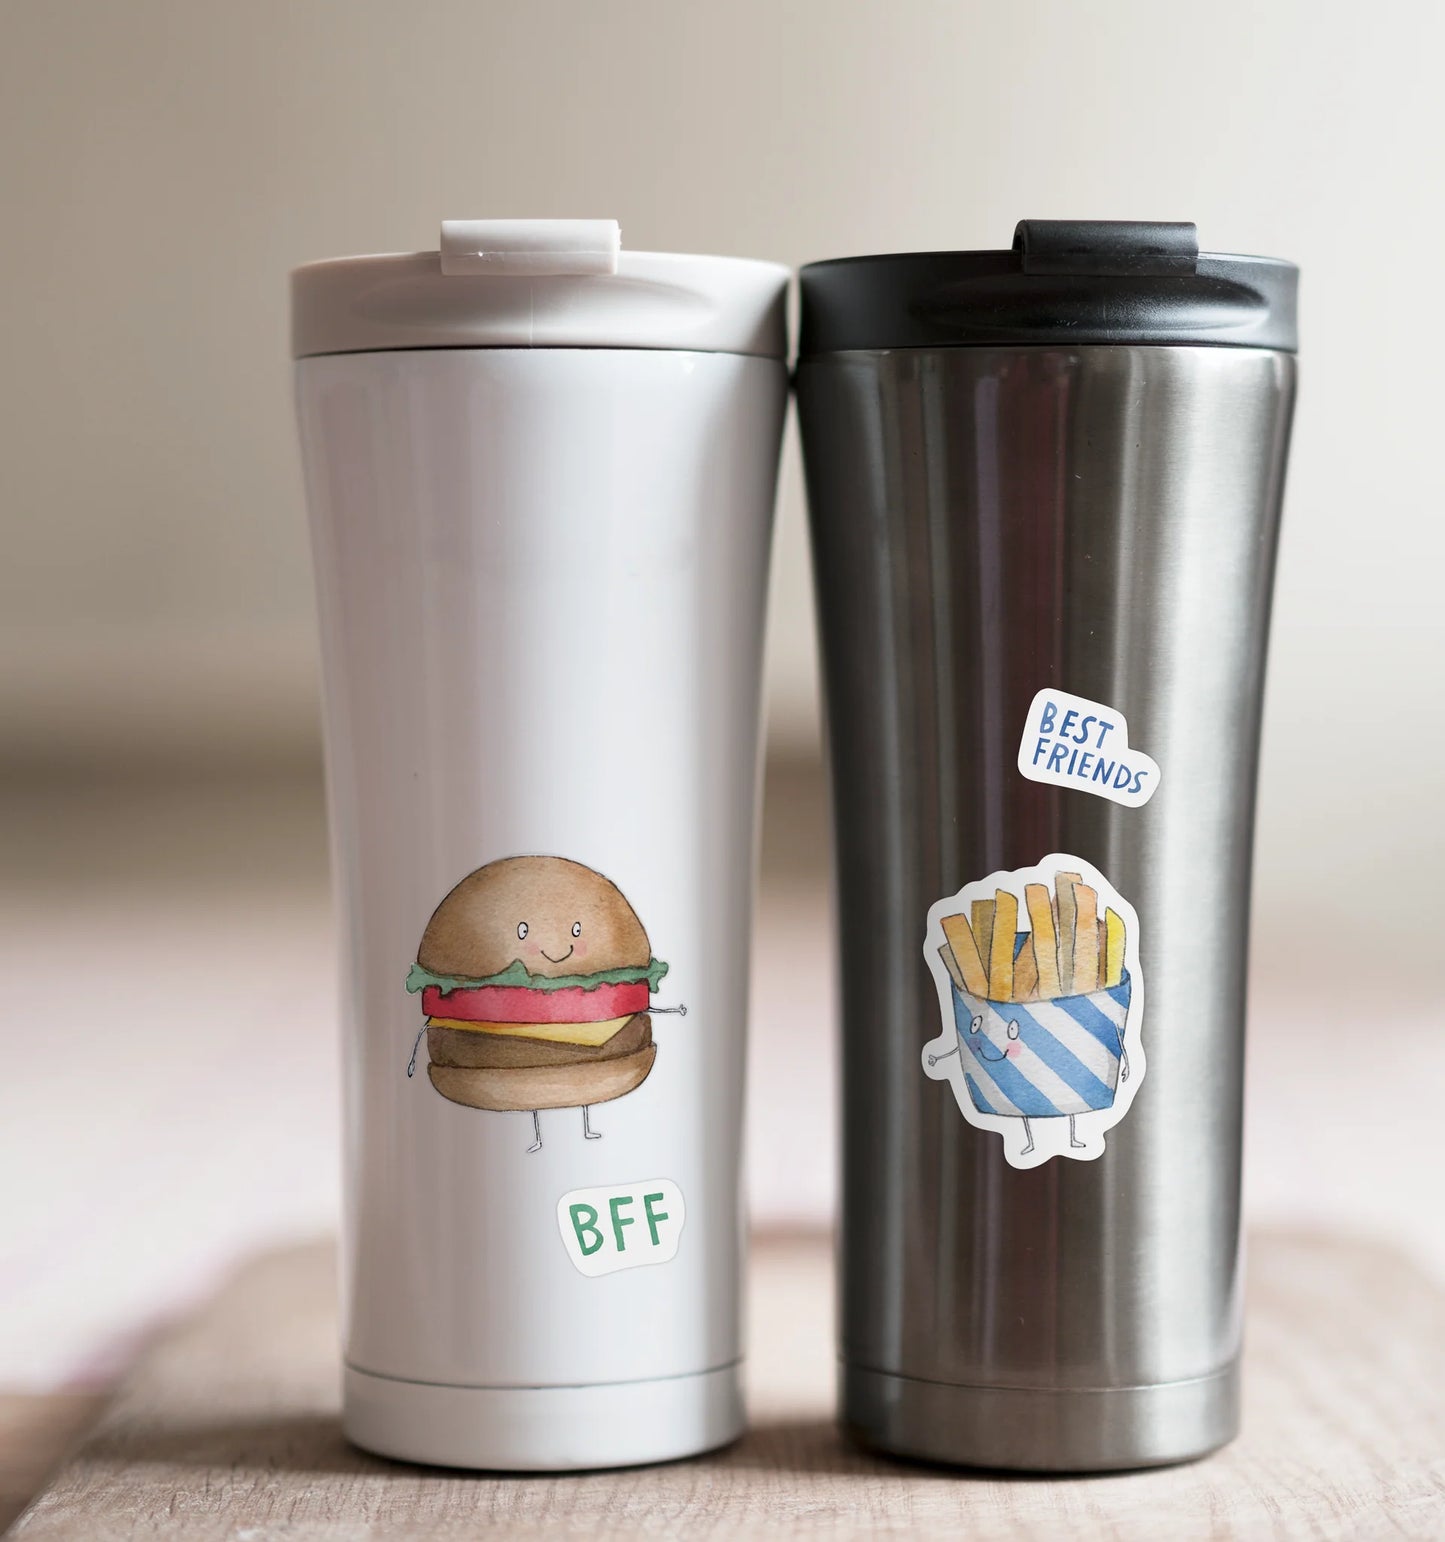 Bff Burger & Fry Sticker Sheet